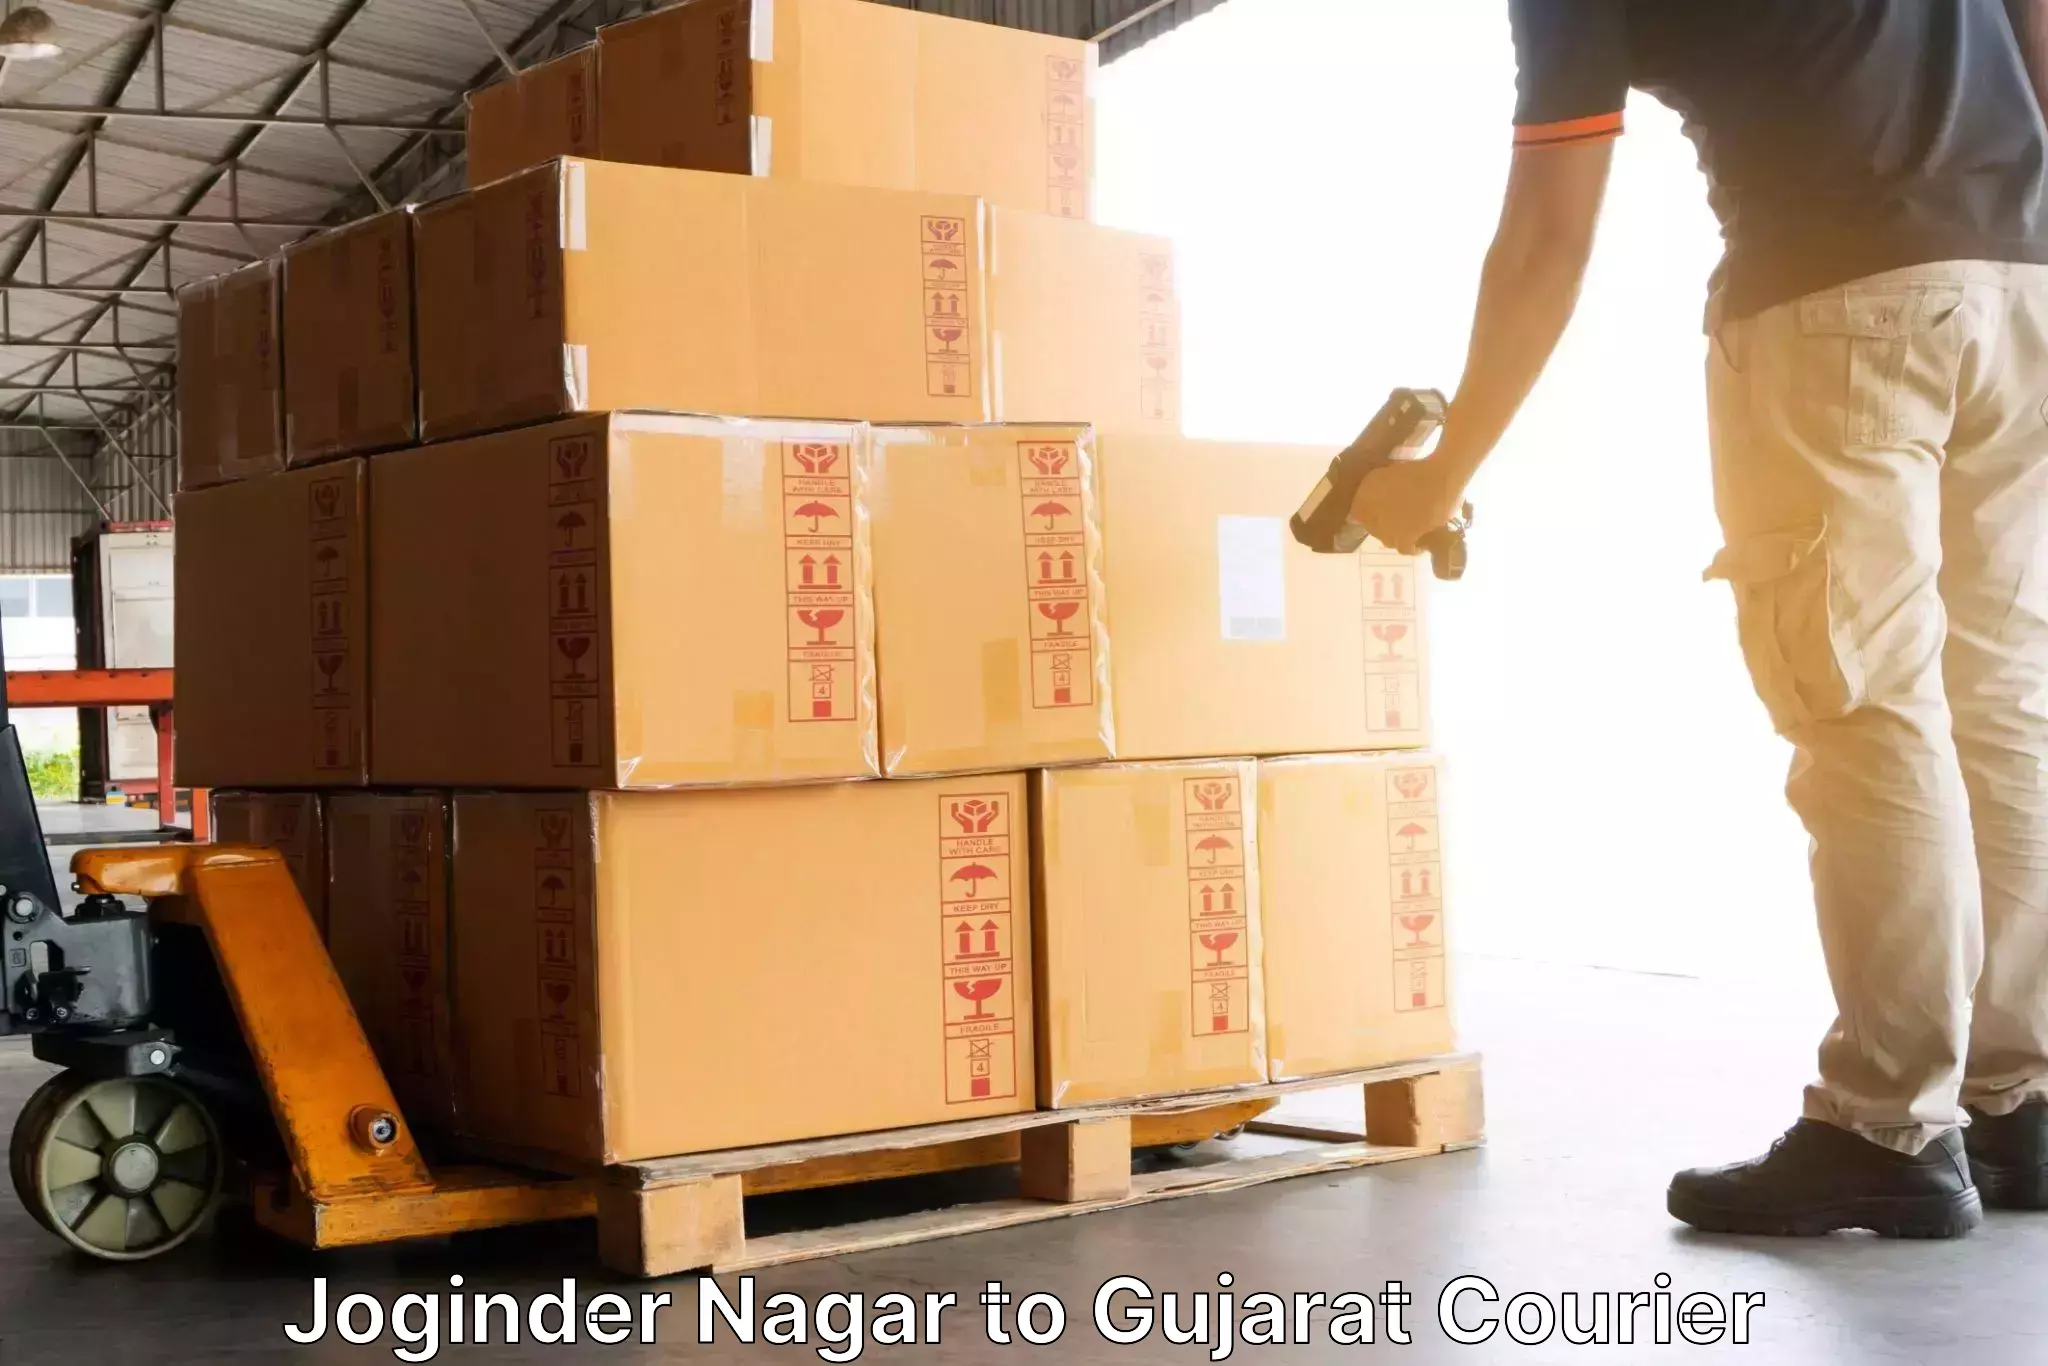 Efficient parcel tracking Joginder Nagar to Gujarat